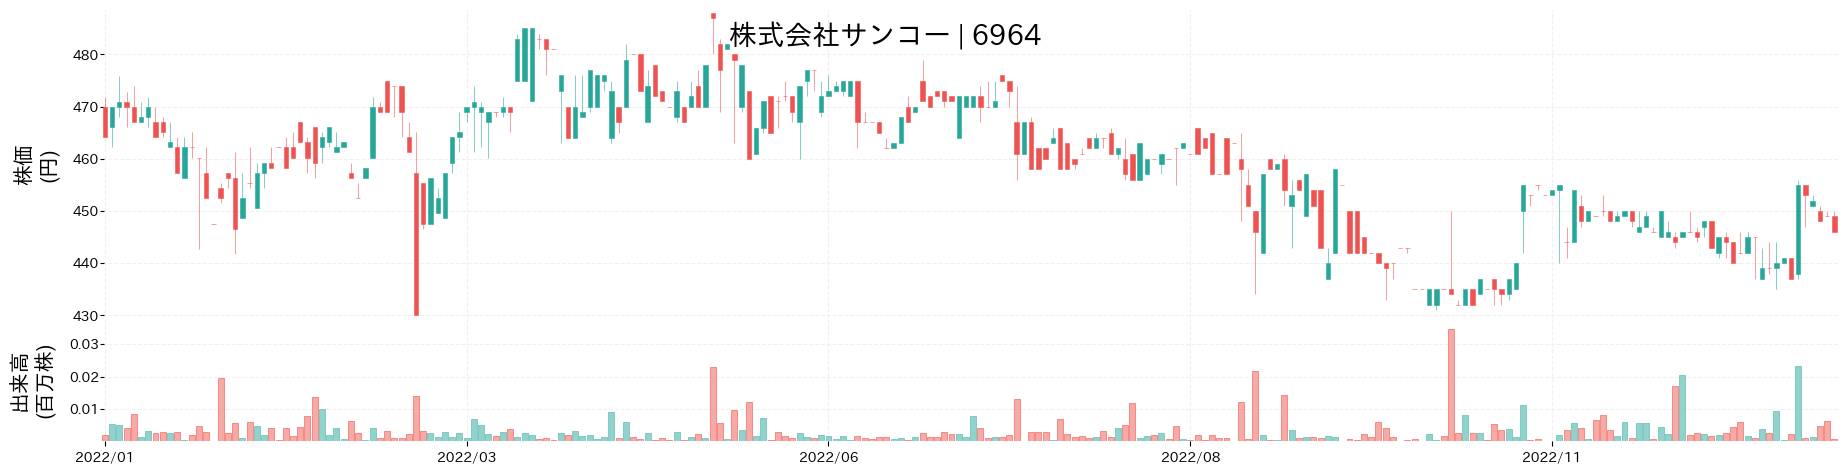 サンコーの株価推移(2022)